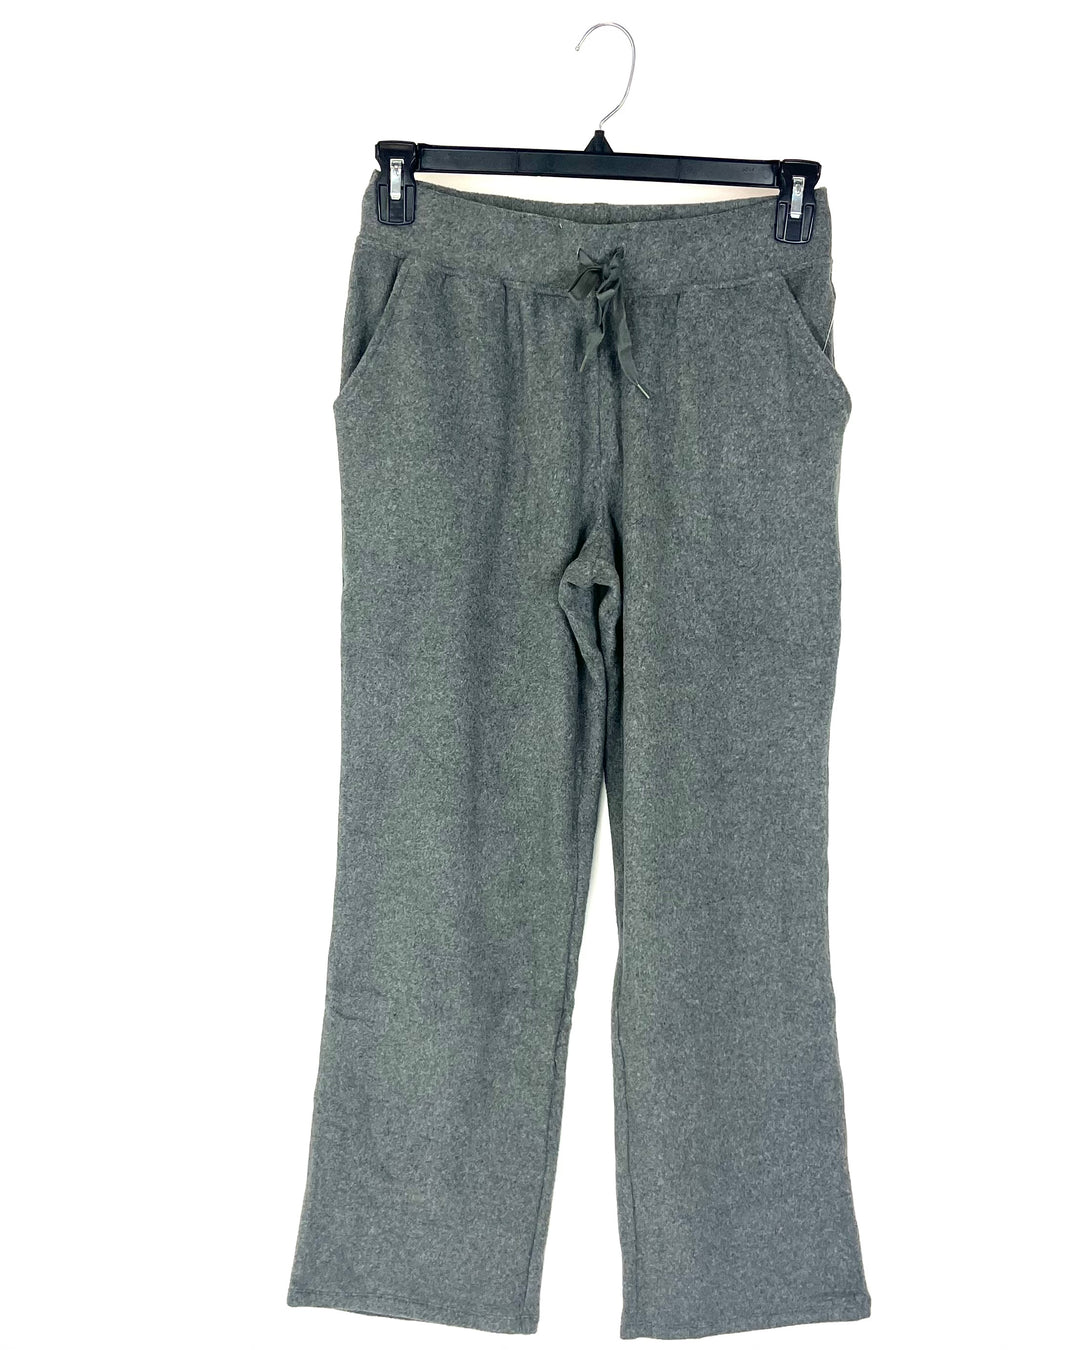 Grey Fleece Lounge Pants - Size 4/6